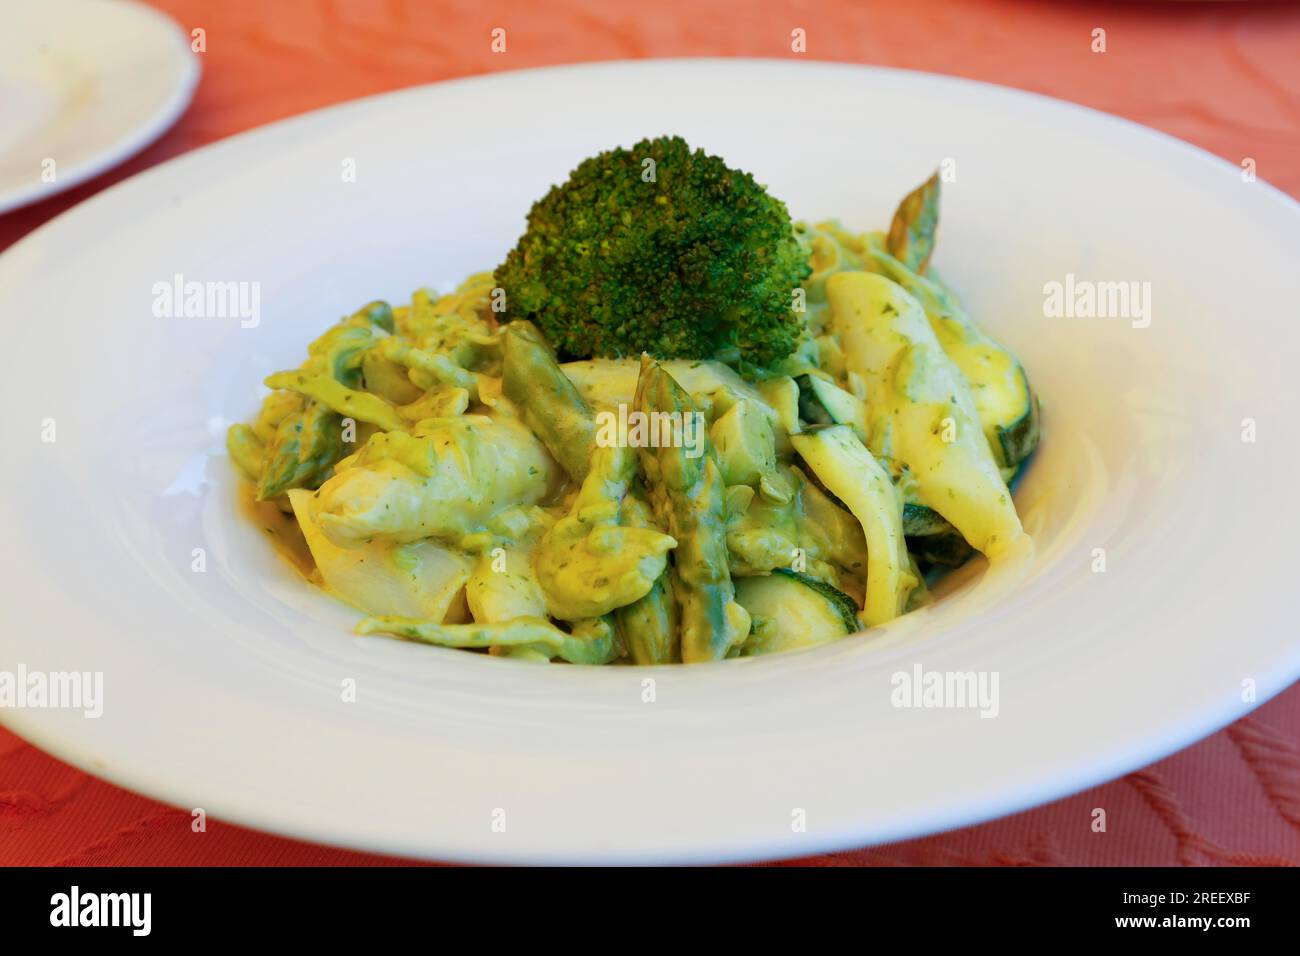 Cucina vegetariana, pasta con verdure, asparagi verdi e bianchi, zucchine, broccoli, broccoli, pasta, piatto di pasta salata, portata principale, salutare Foto Stock